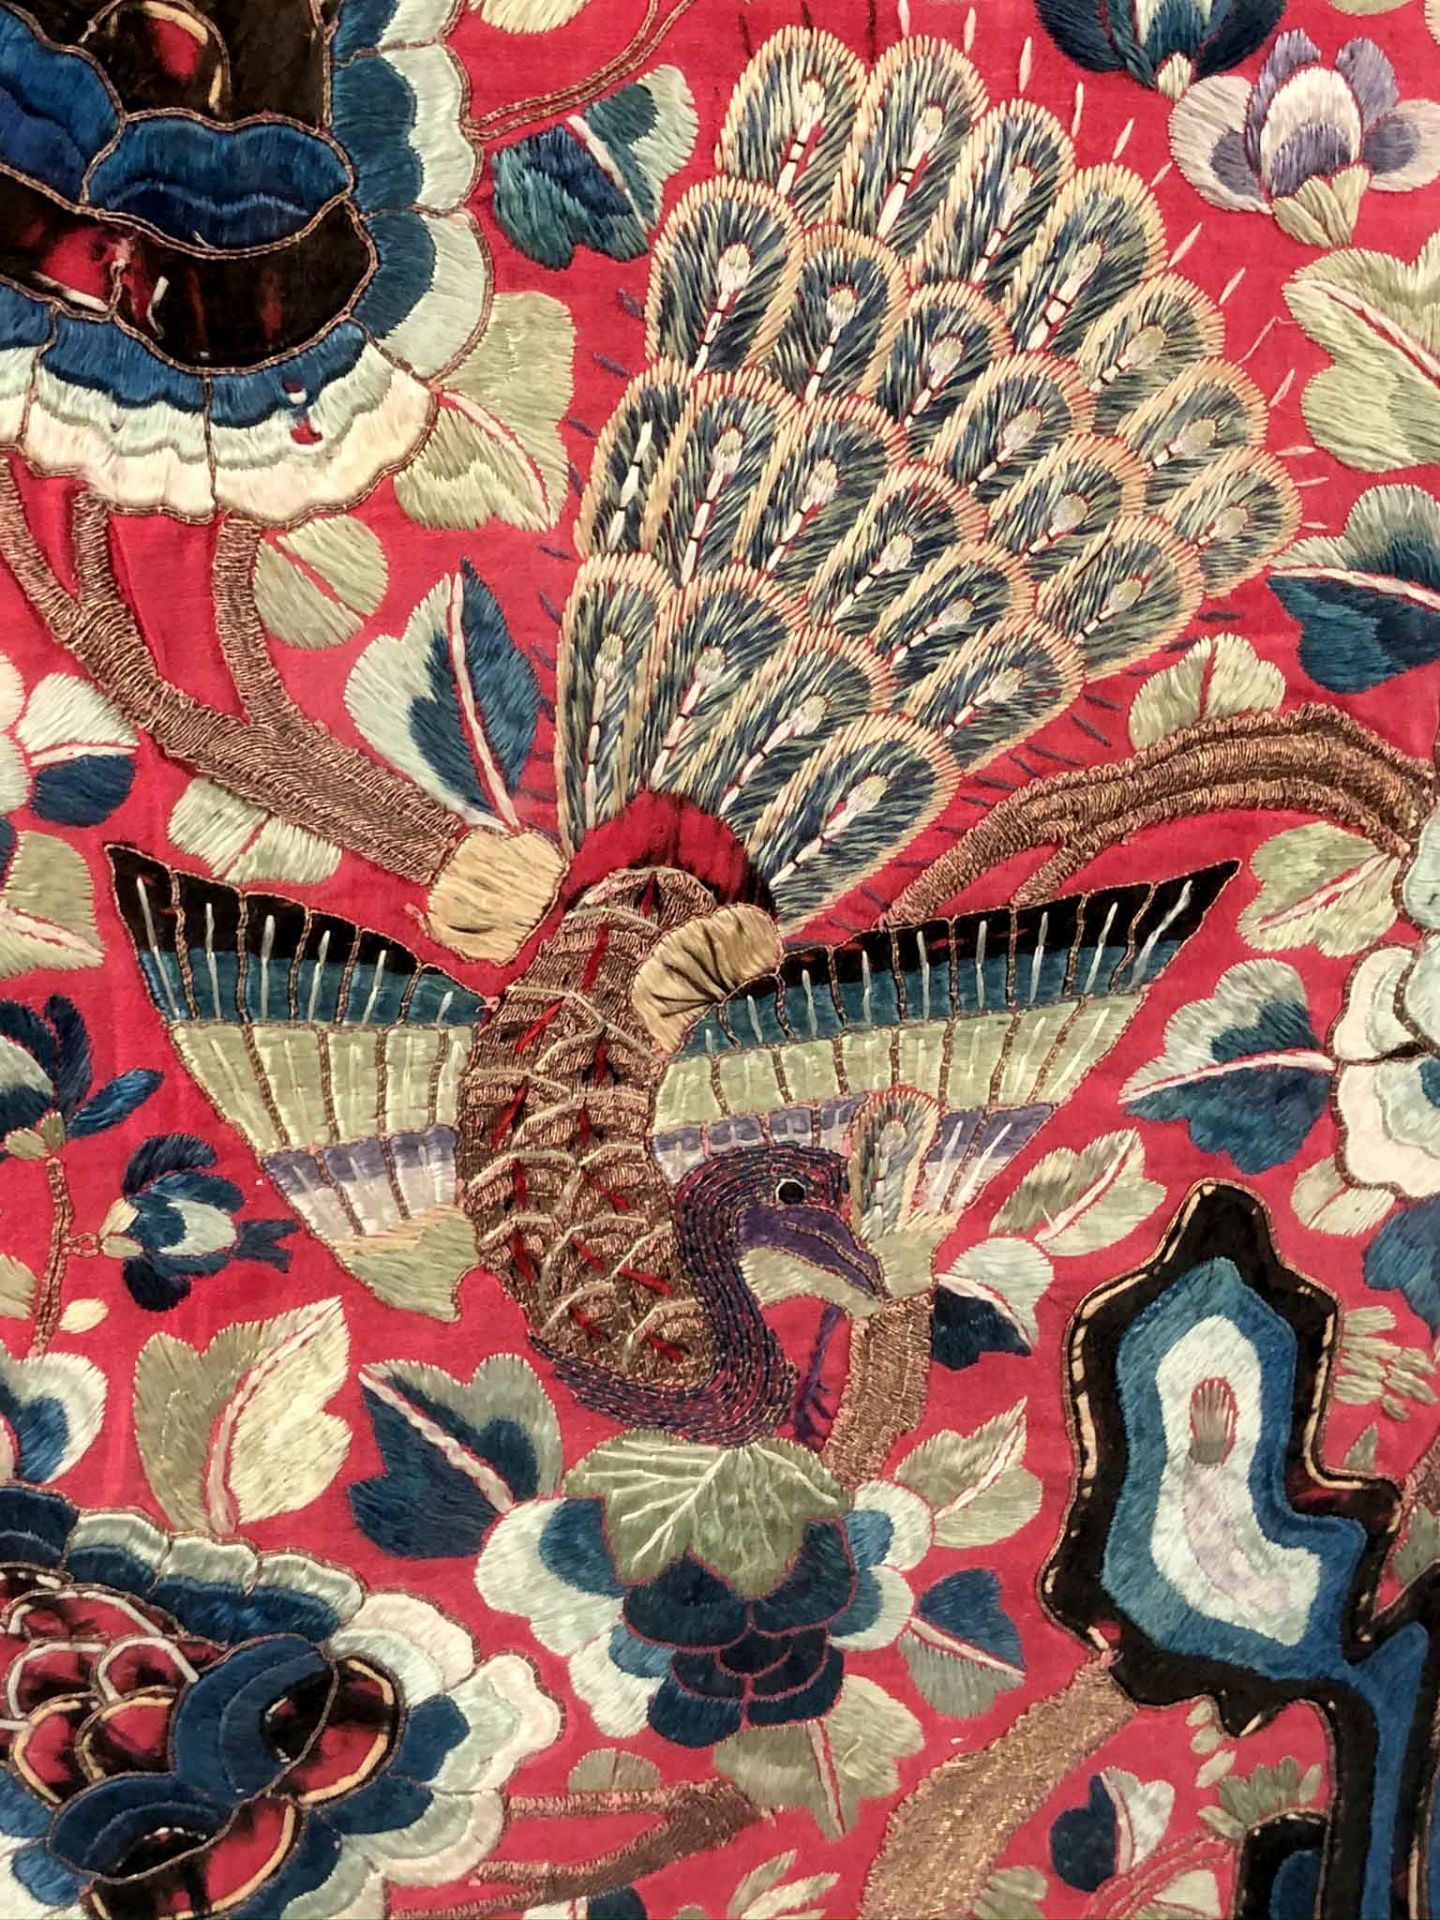 Behang. Seidenstickerei, Stumpwork. Wohl China 19. Jahrhundert.91,5 cm x 98 cm sichtbar. Hinten - Bild 11 aus 14